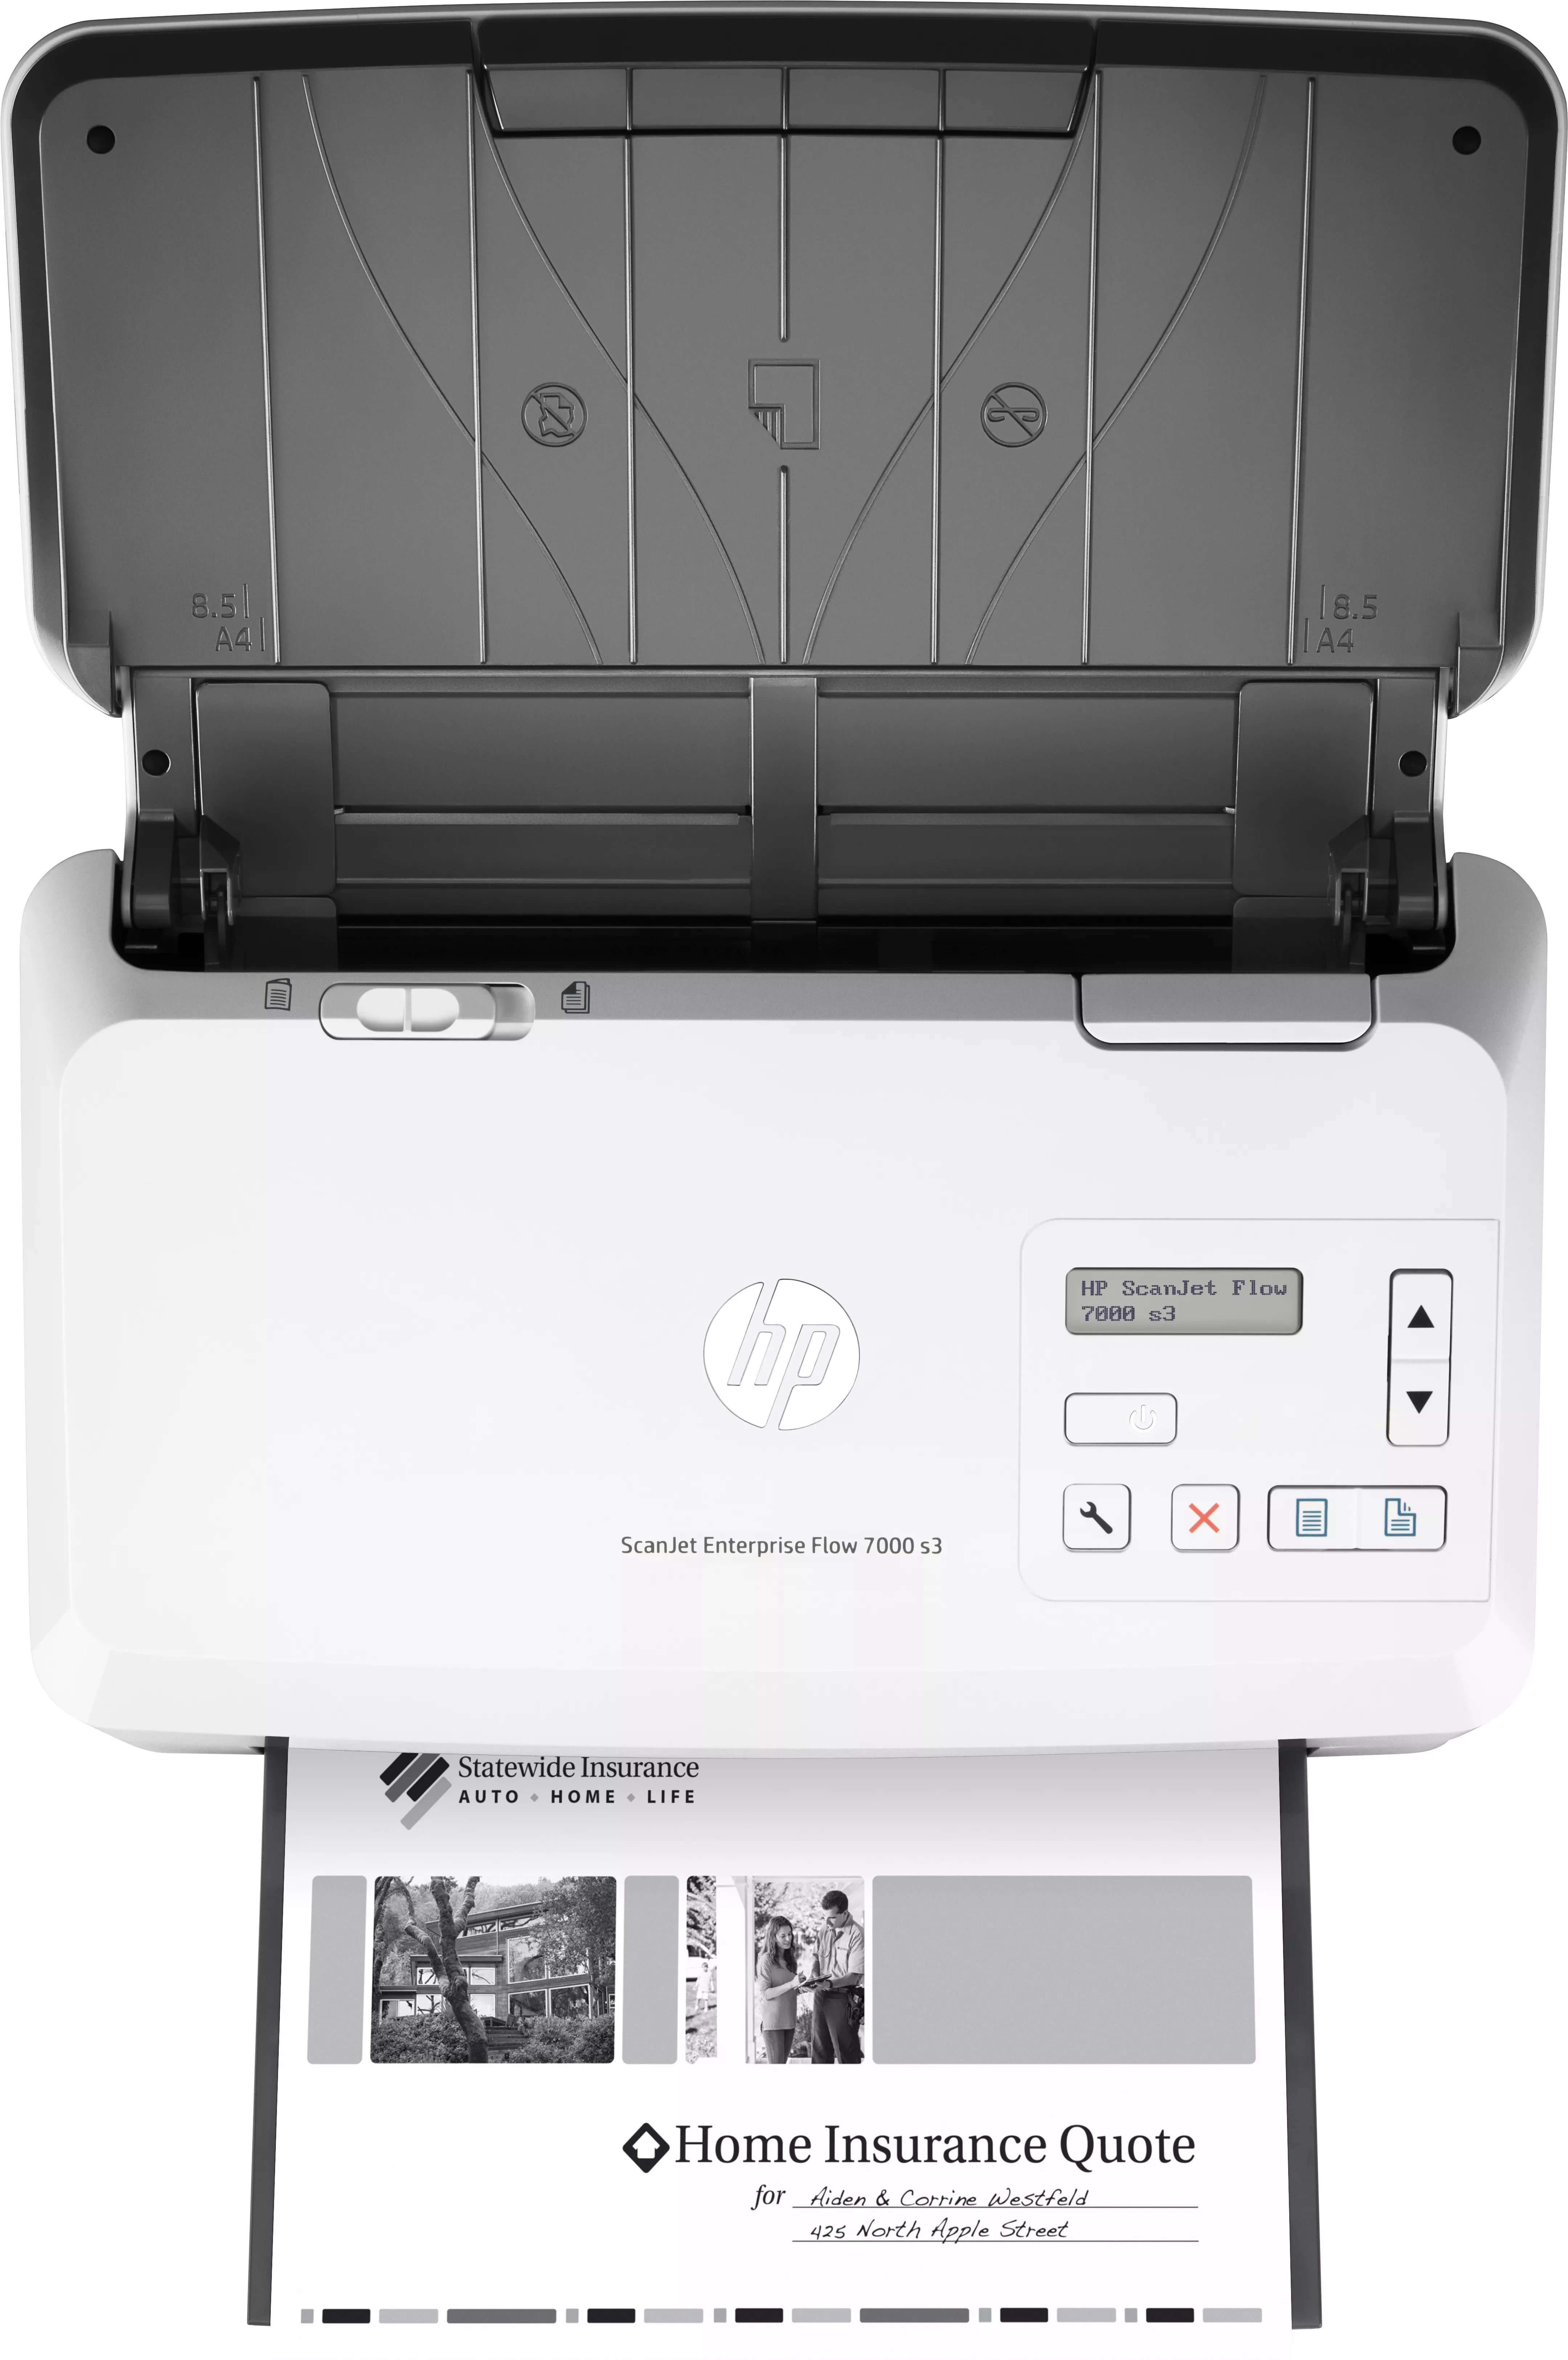 Vente HP ScanJet Enterprise Flow 7000 s3 HP au meilleur prix - visuel 6